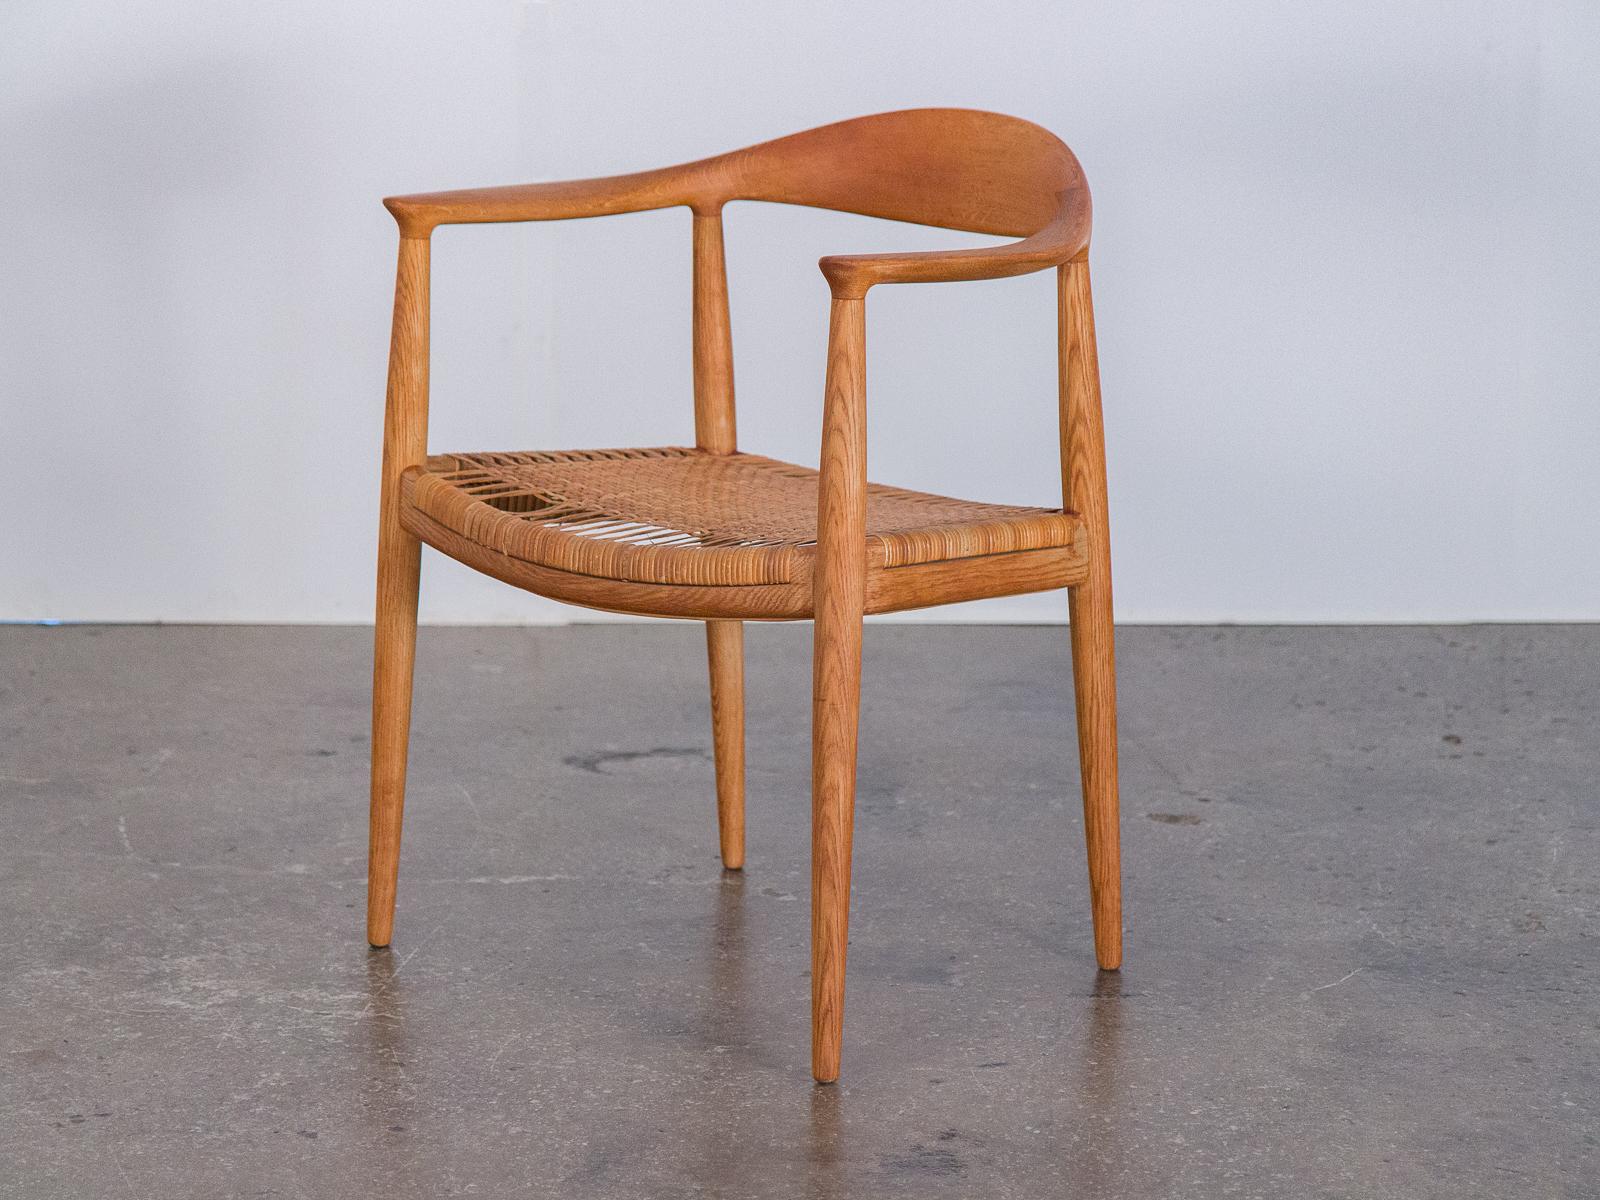 Satz von zehn zusammenpassenden runden Esszimmerstühlen Modell JH-501 mit Rohrsitzen, entworfen von Hans J. Wegner für Johannes Hansen, Dänemark. Dieses ikonische Design ist vor allem als 